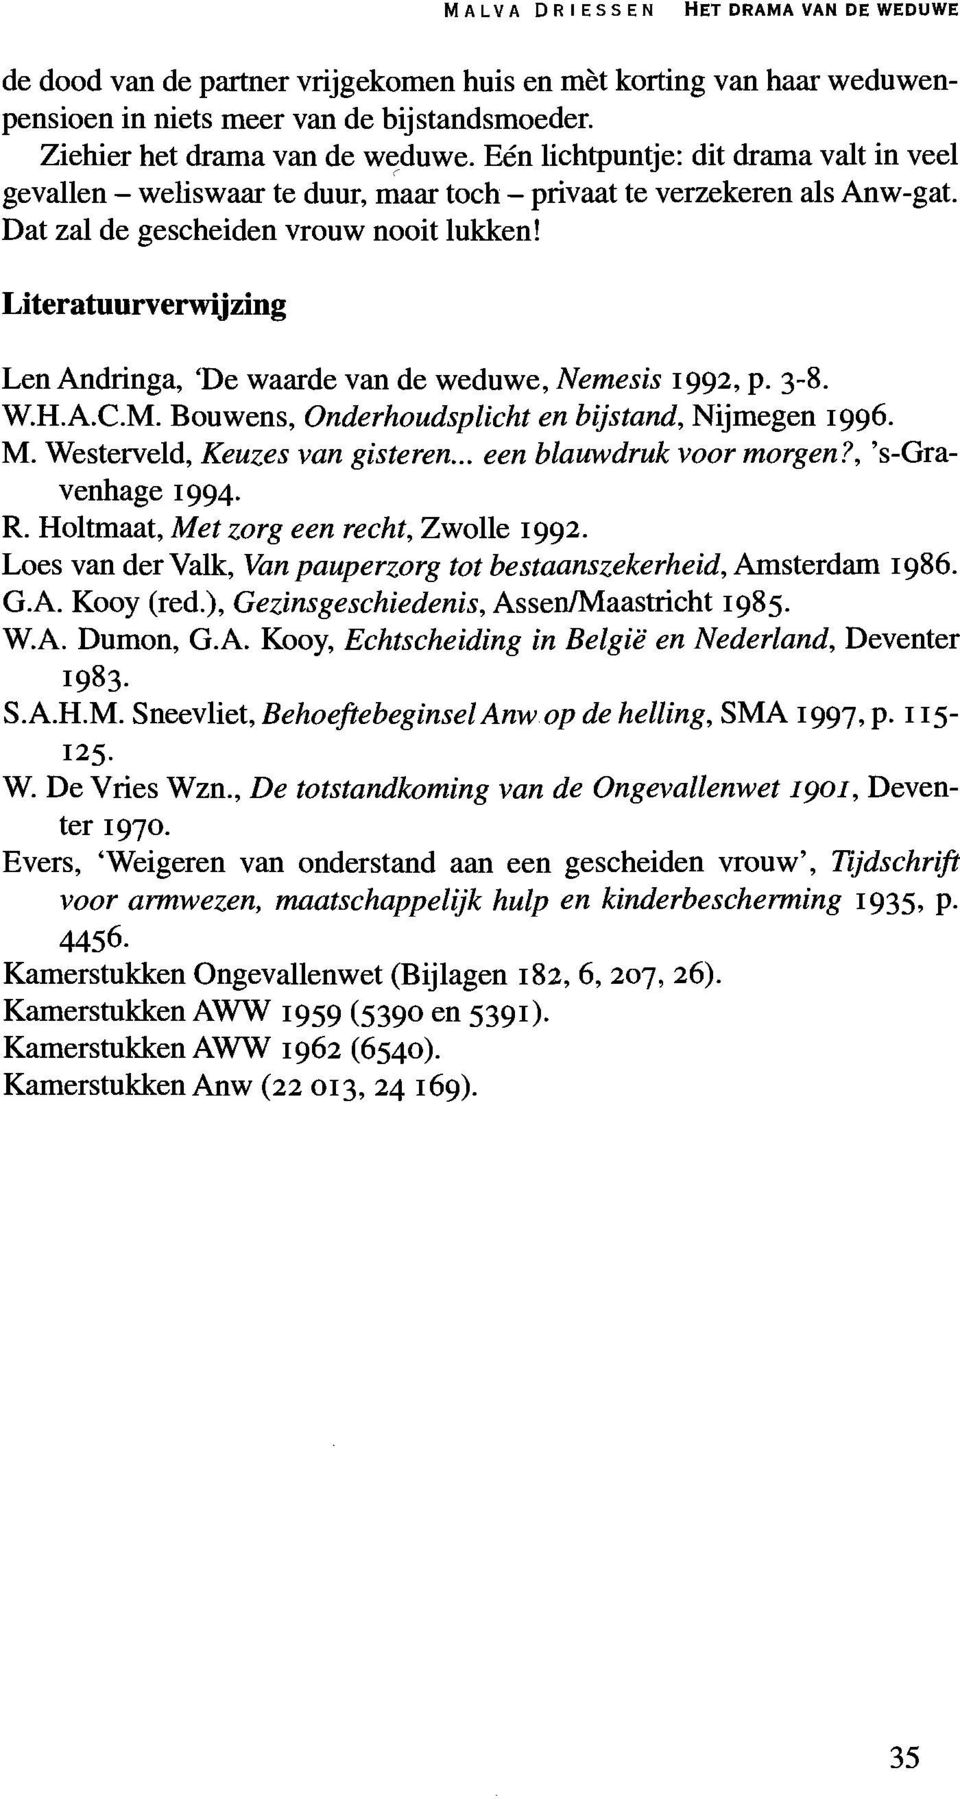 Literatuurverwijzing Len Andringa, 'De waarde van de weduwe, Nemesis 1992, p. 3-8. W.H.A.C.M. Bouwens, Onderhoudsplichten bijstand, Nijmegen 1996. M. Westerveld, Keuzes van gisteren.